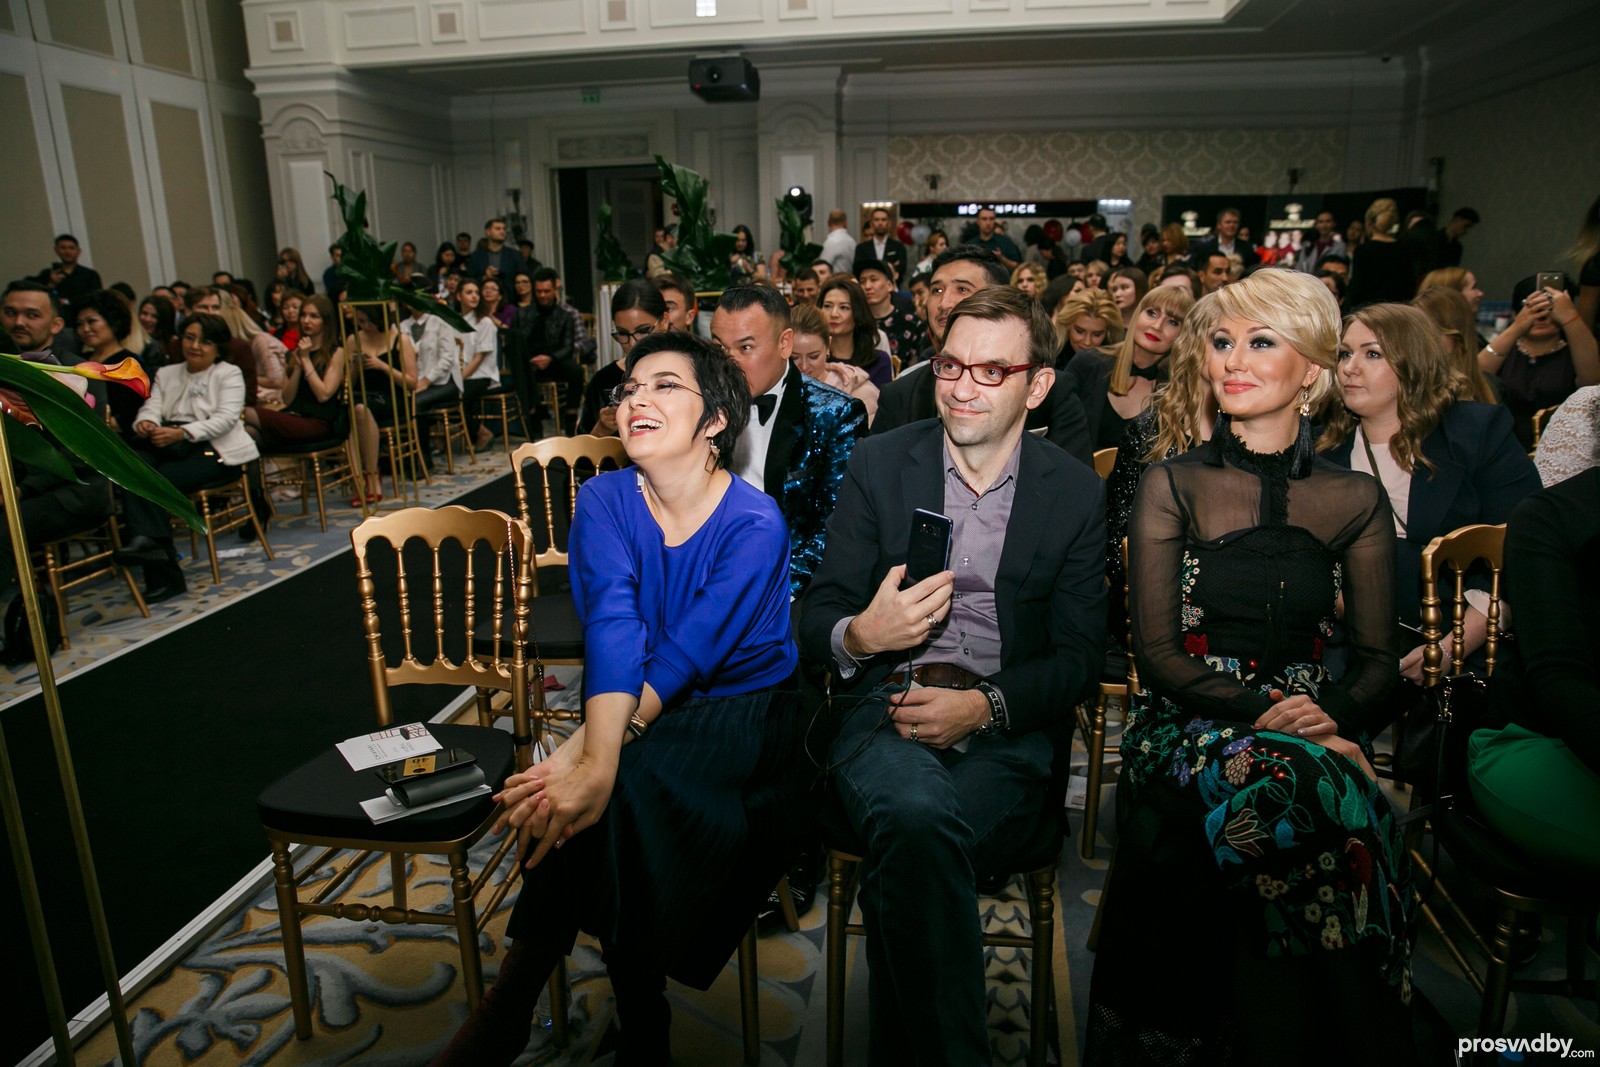 На фото организатор Свадебной премии Евгения Преймане-Евстегнеева, ее супруг и медиа-личность и популярная телеведущая Алена Петрова, которая в этом году также вошла в совет жюри